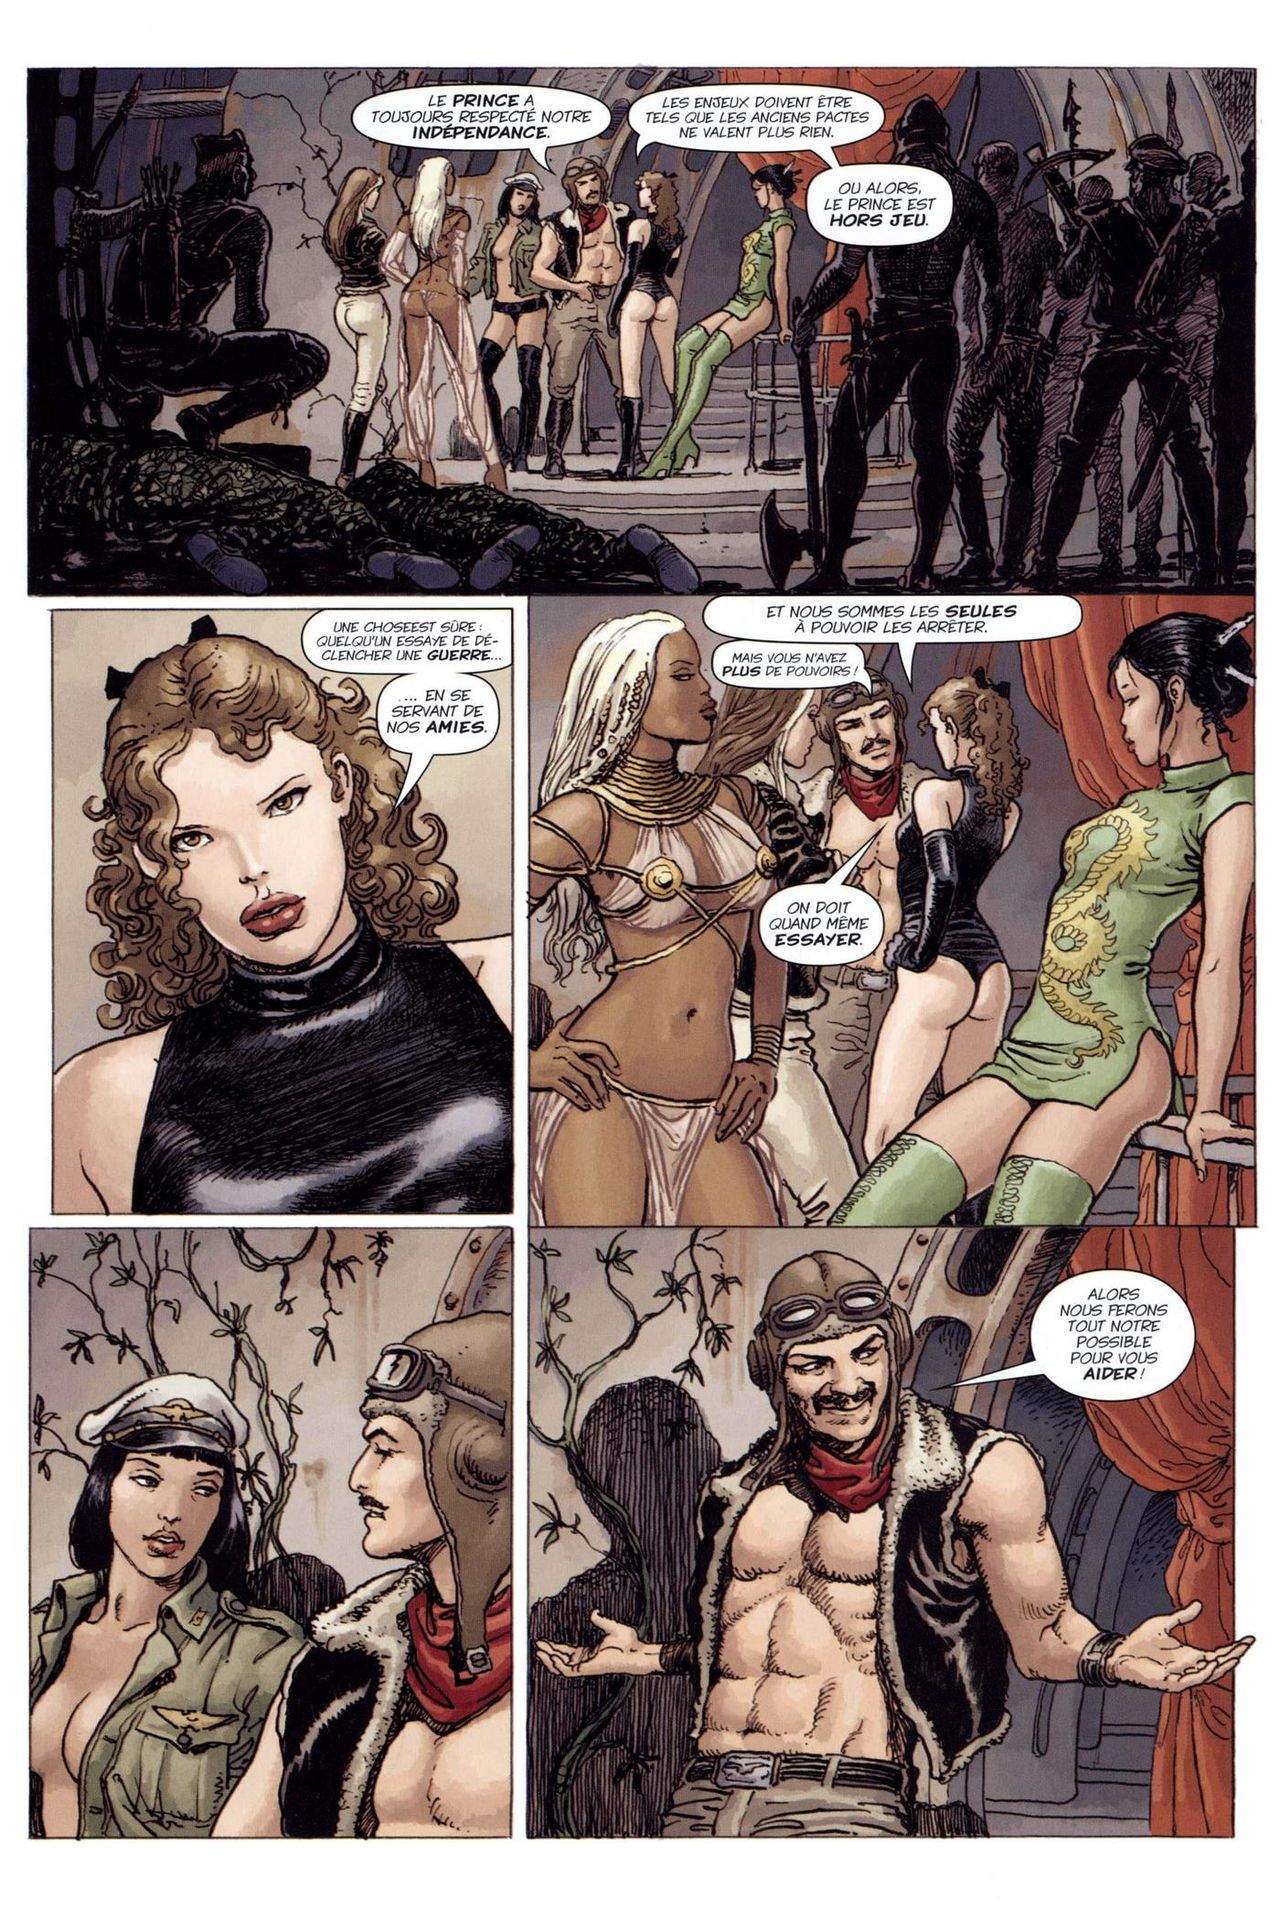 X-Men Jeunes filles en fuite numero d'image 39